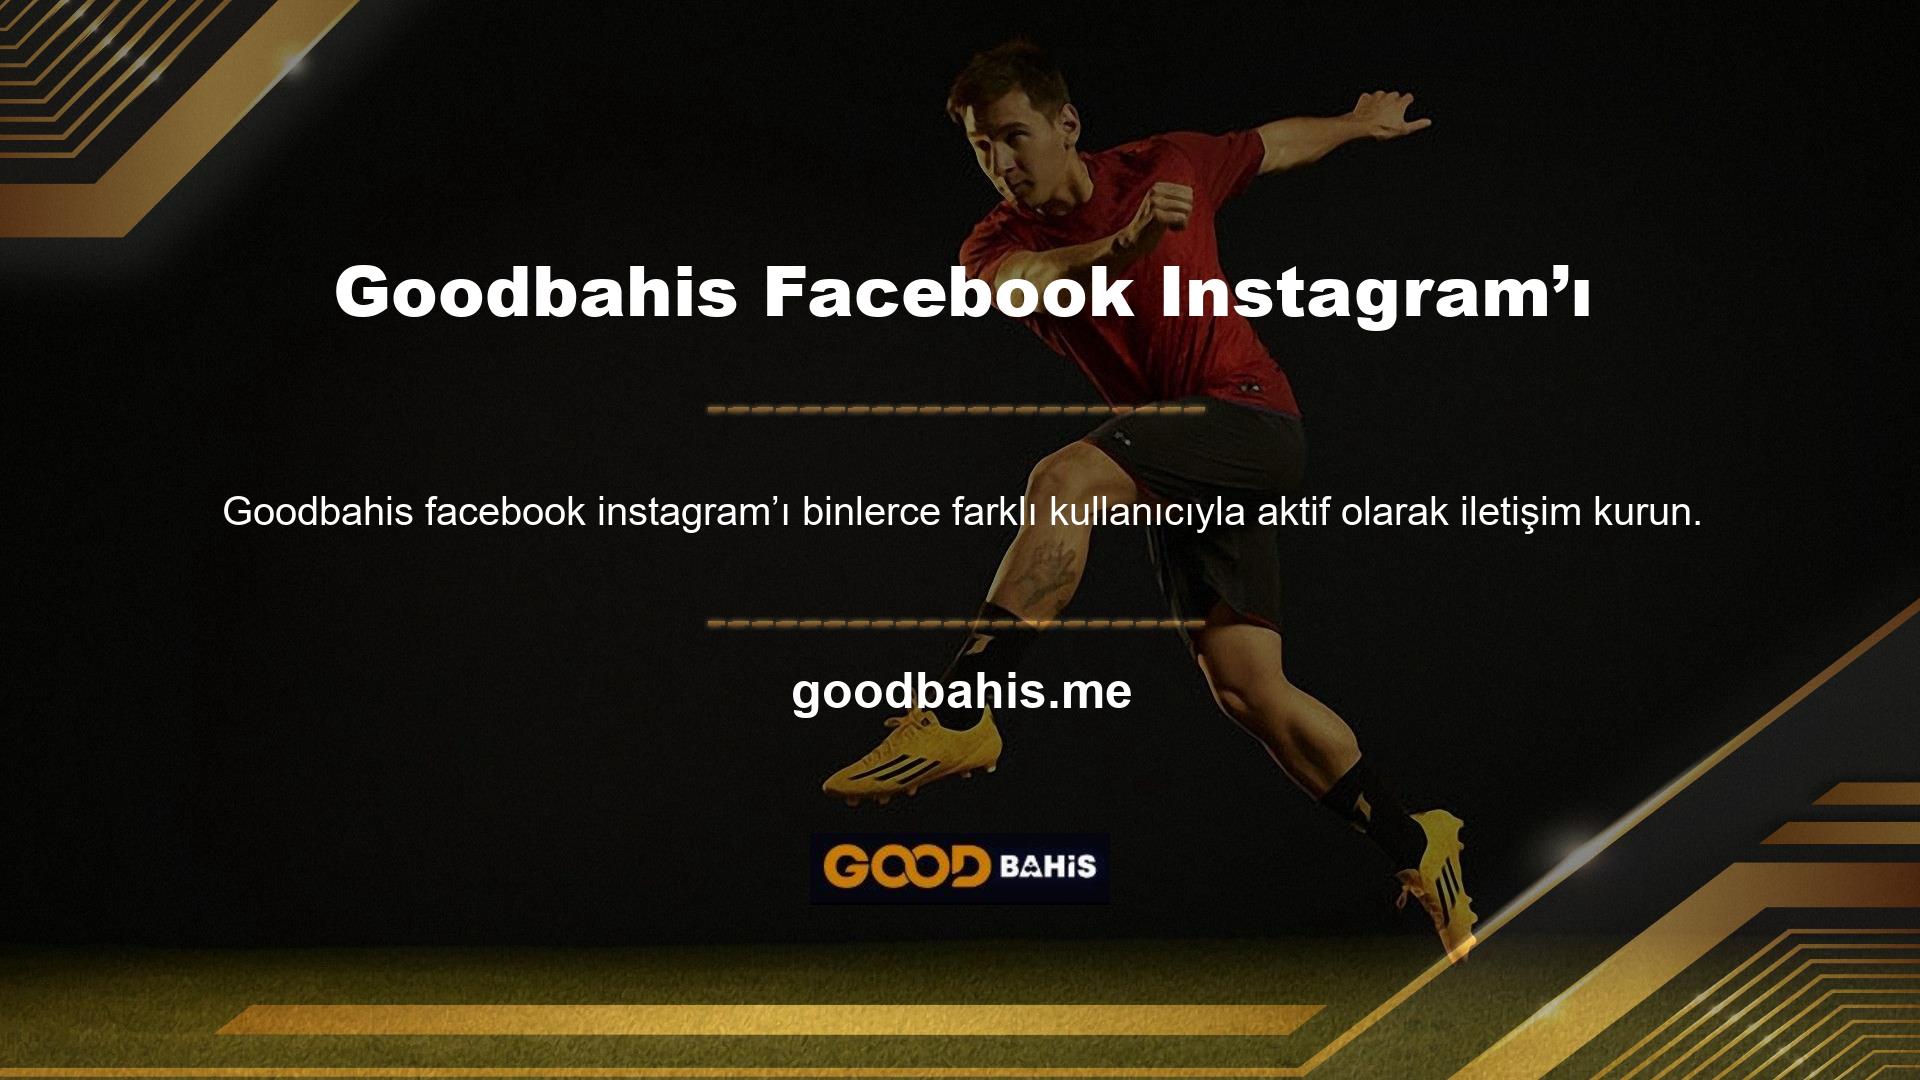 Web sitemizin hizmetleri hakkında daha fazla bilgi edinmek ve yeni bonus haberlerinden ilk siz haberdar olmak için Goodbahis Instagram hesabını takip edin